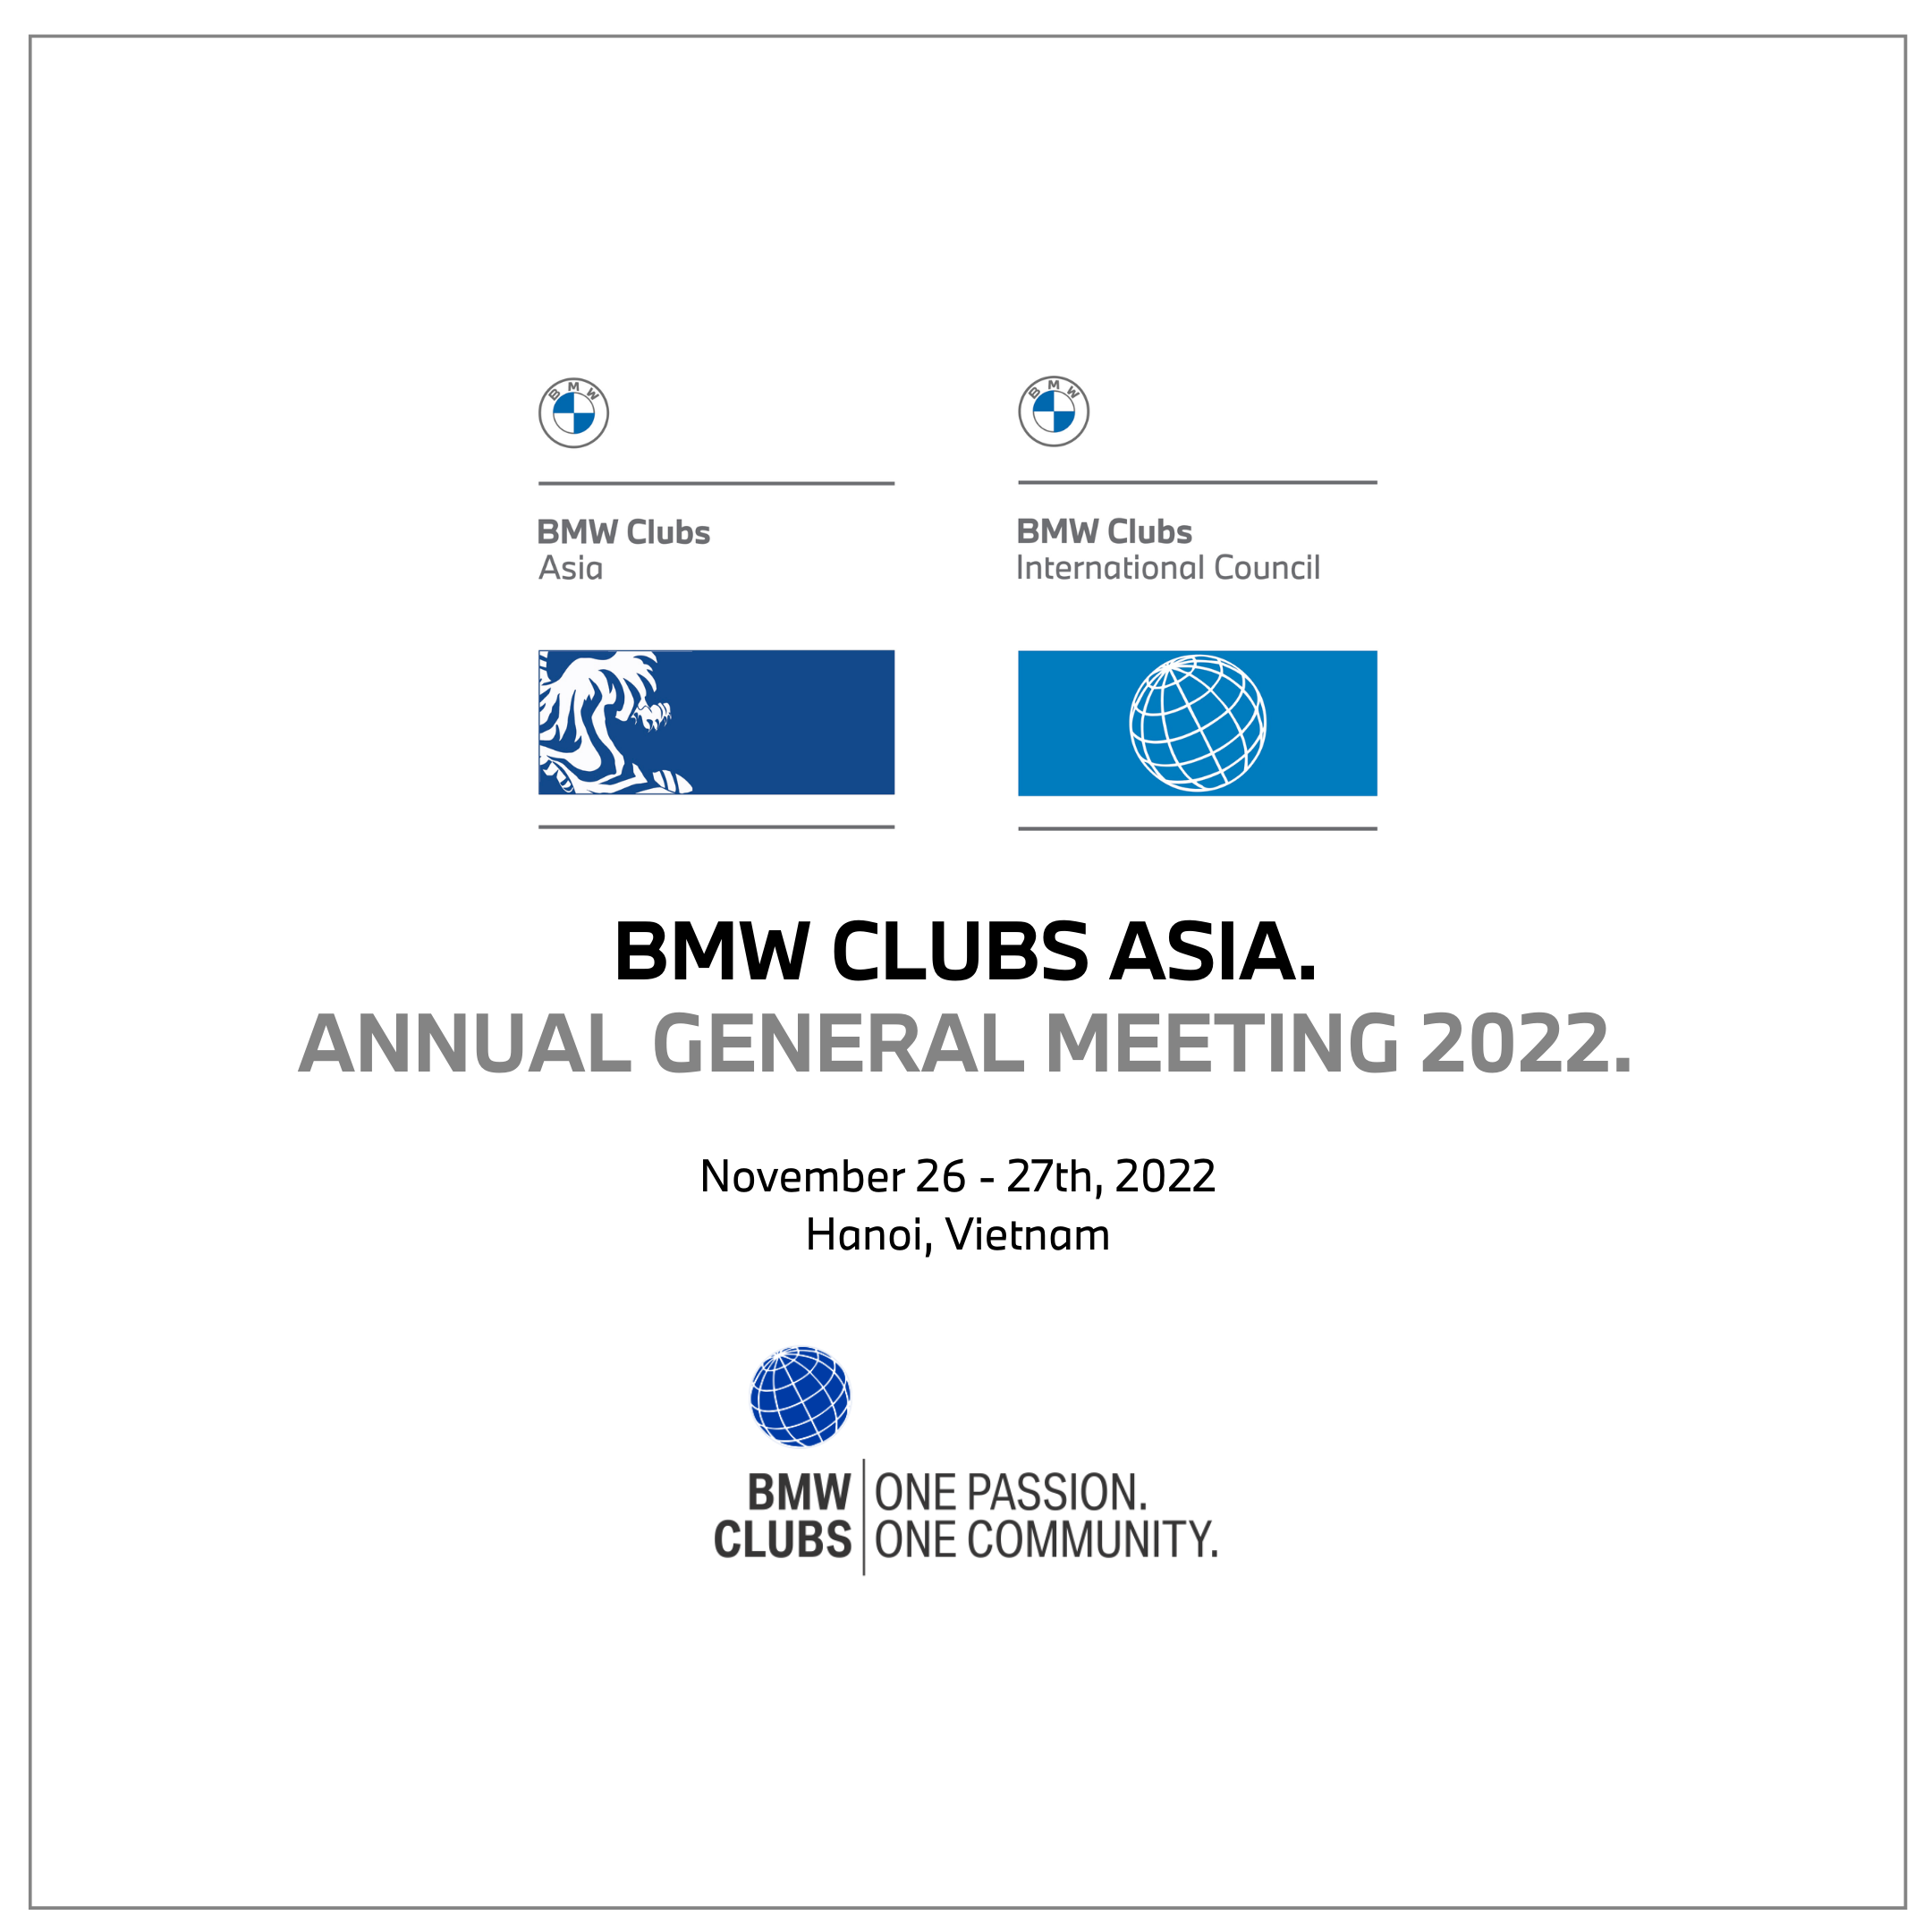 Báo cáo sau sự kiện BMW Clubs Asia AGM Hà Nội 2022 được tổ chức bởi BMW Car Club Vietnam